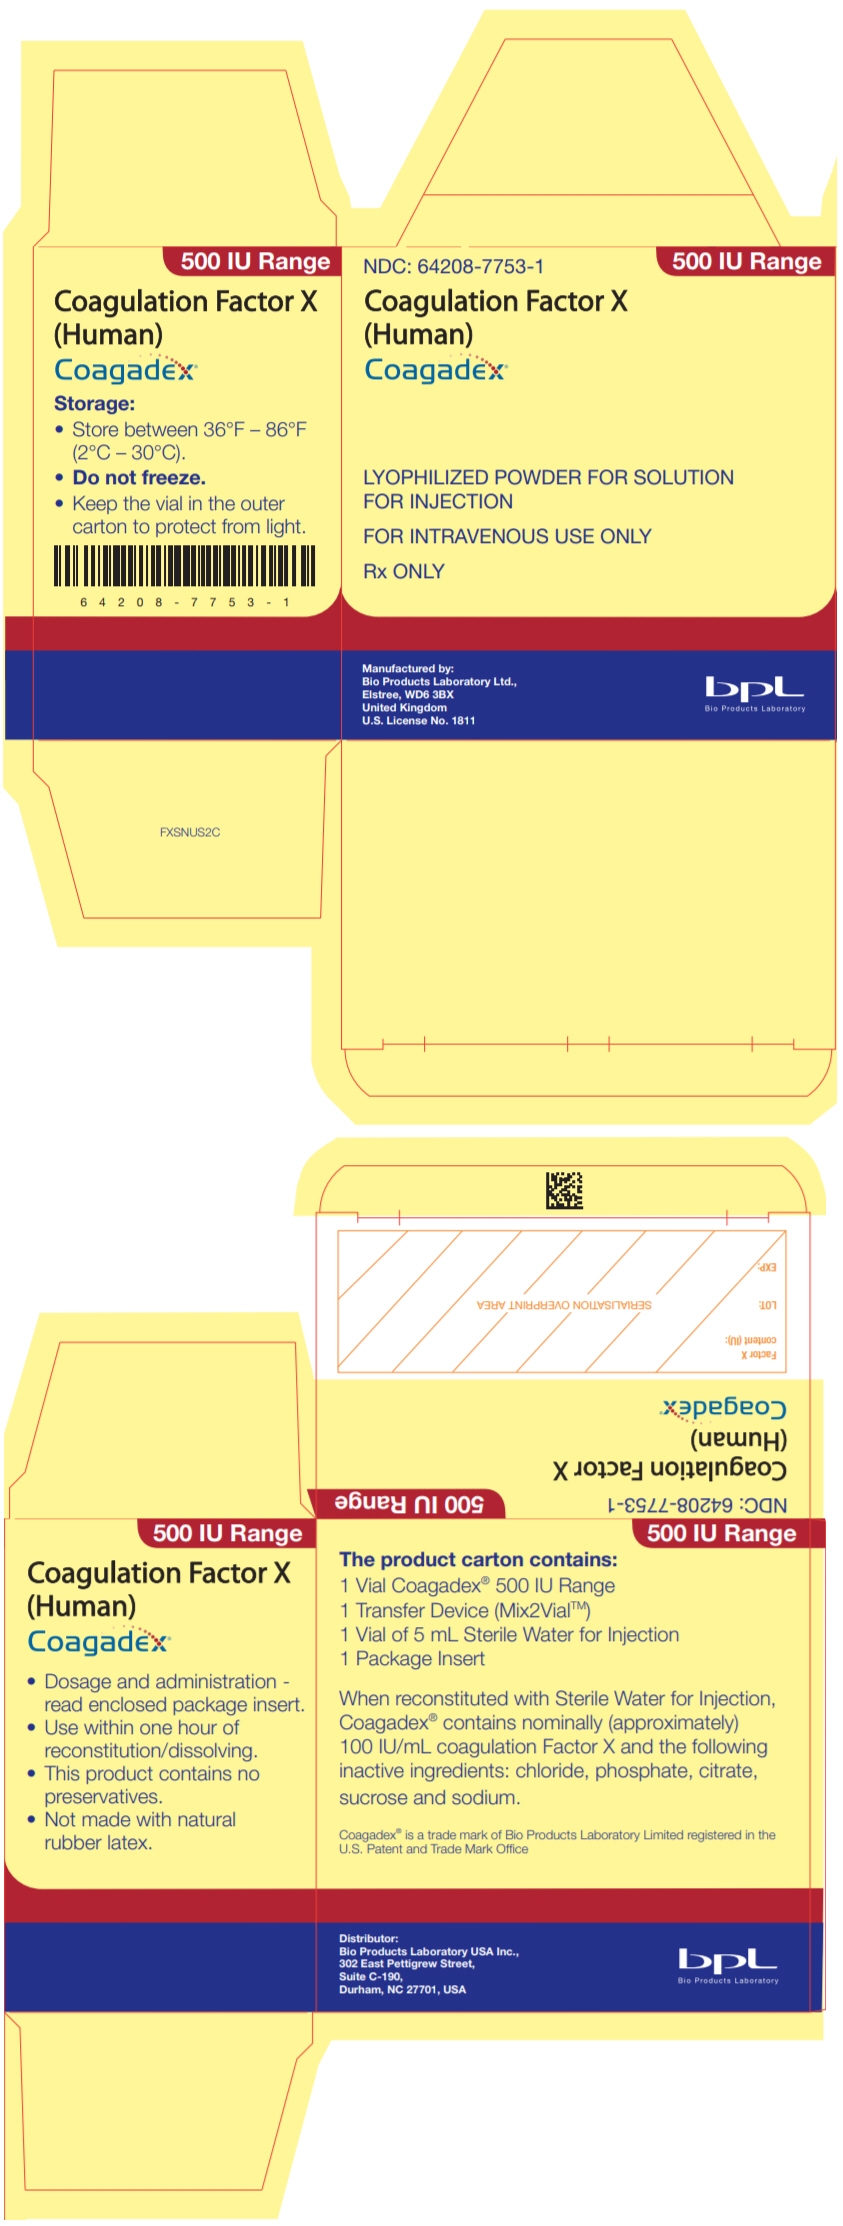 PRINCIPAL DISPLAY PANEL - 500 IU Kit Carton